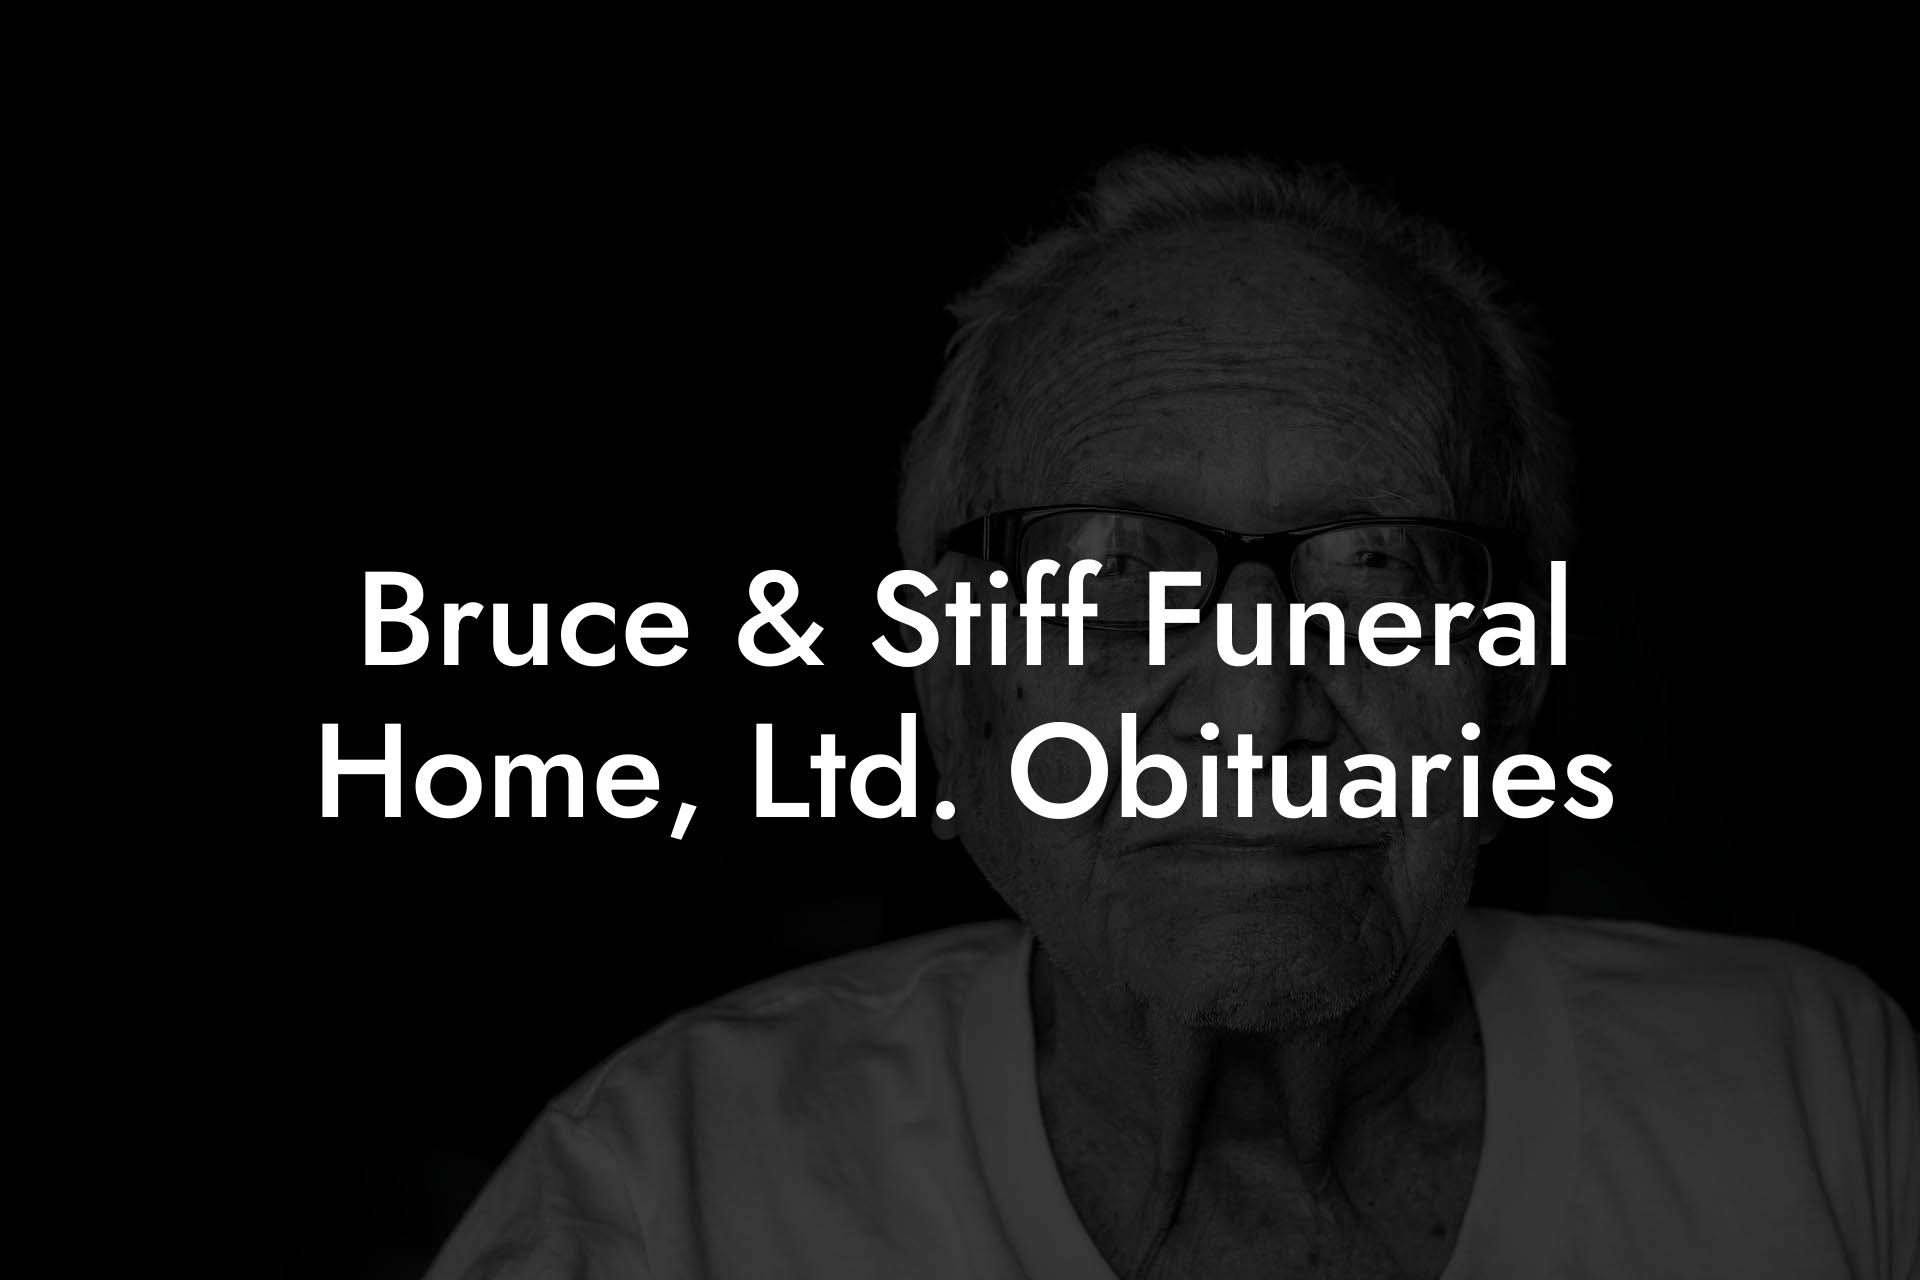 Bruce & Stiff Funeral Home, Ltd. Obituaries